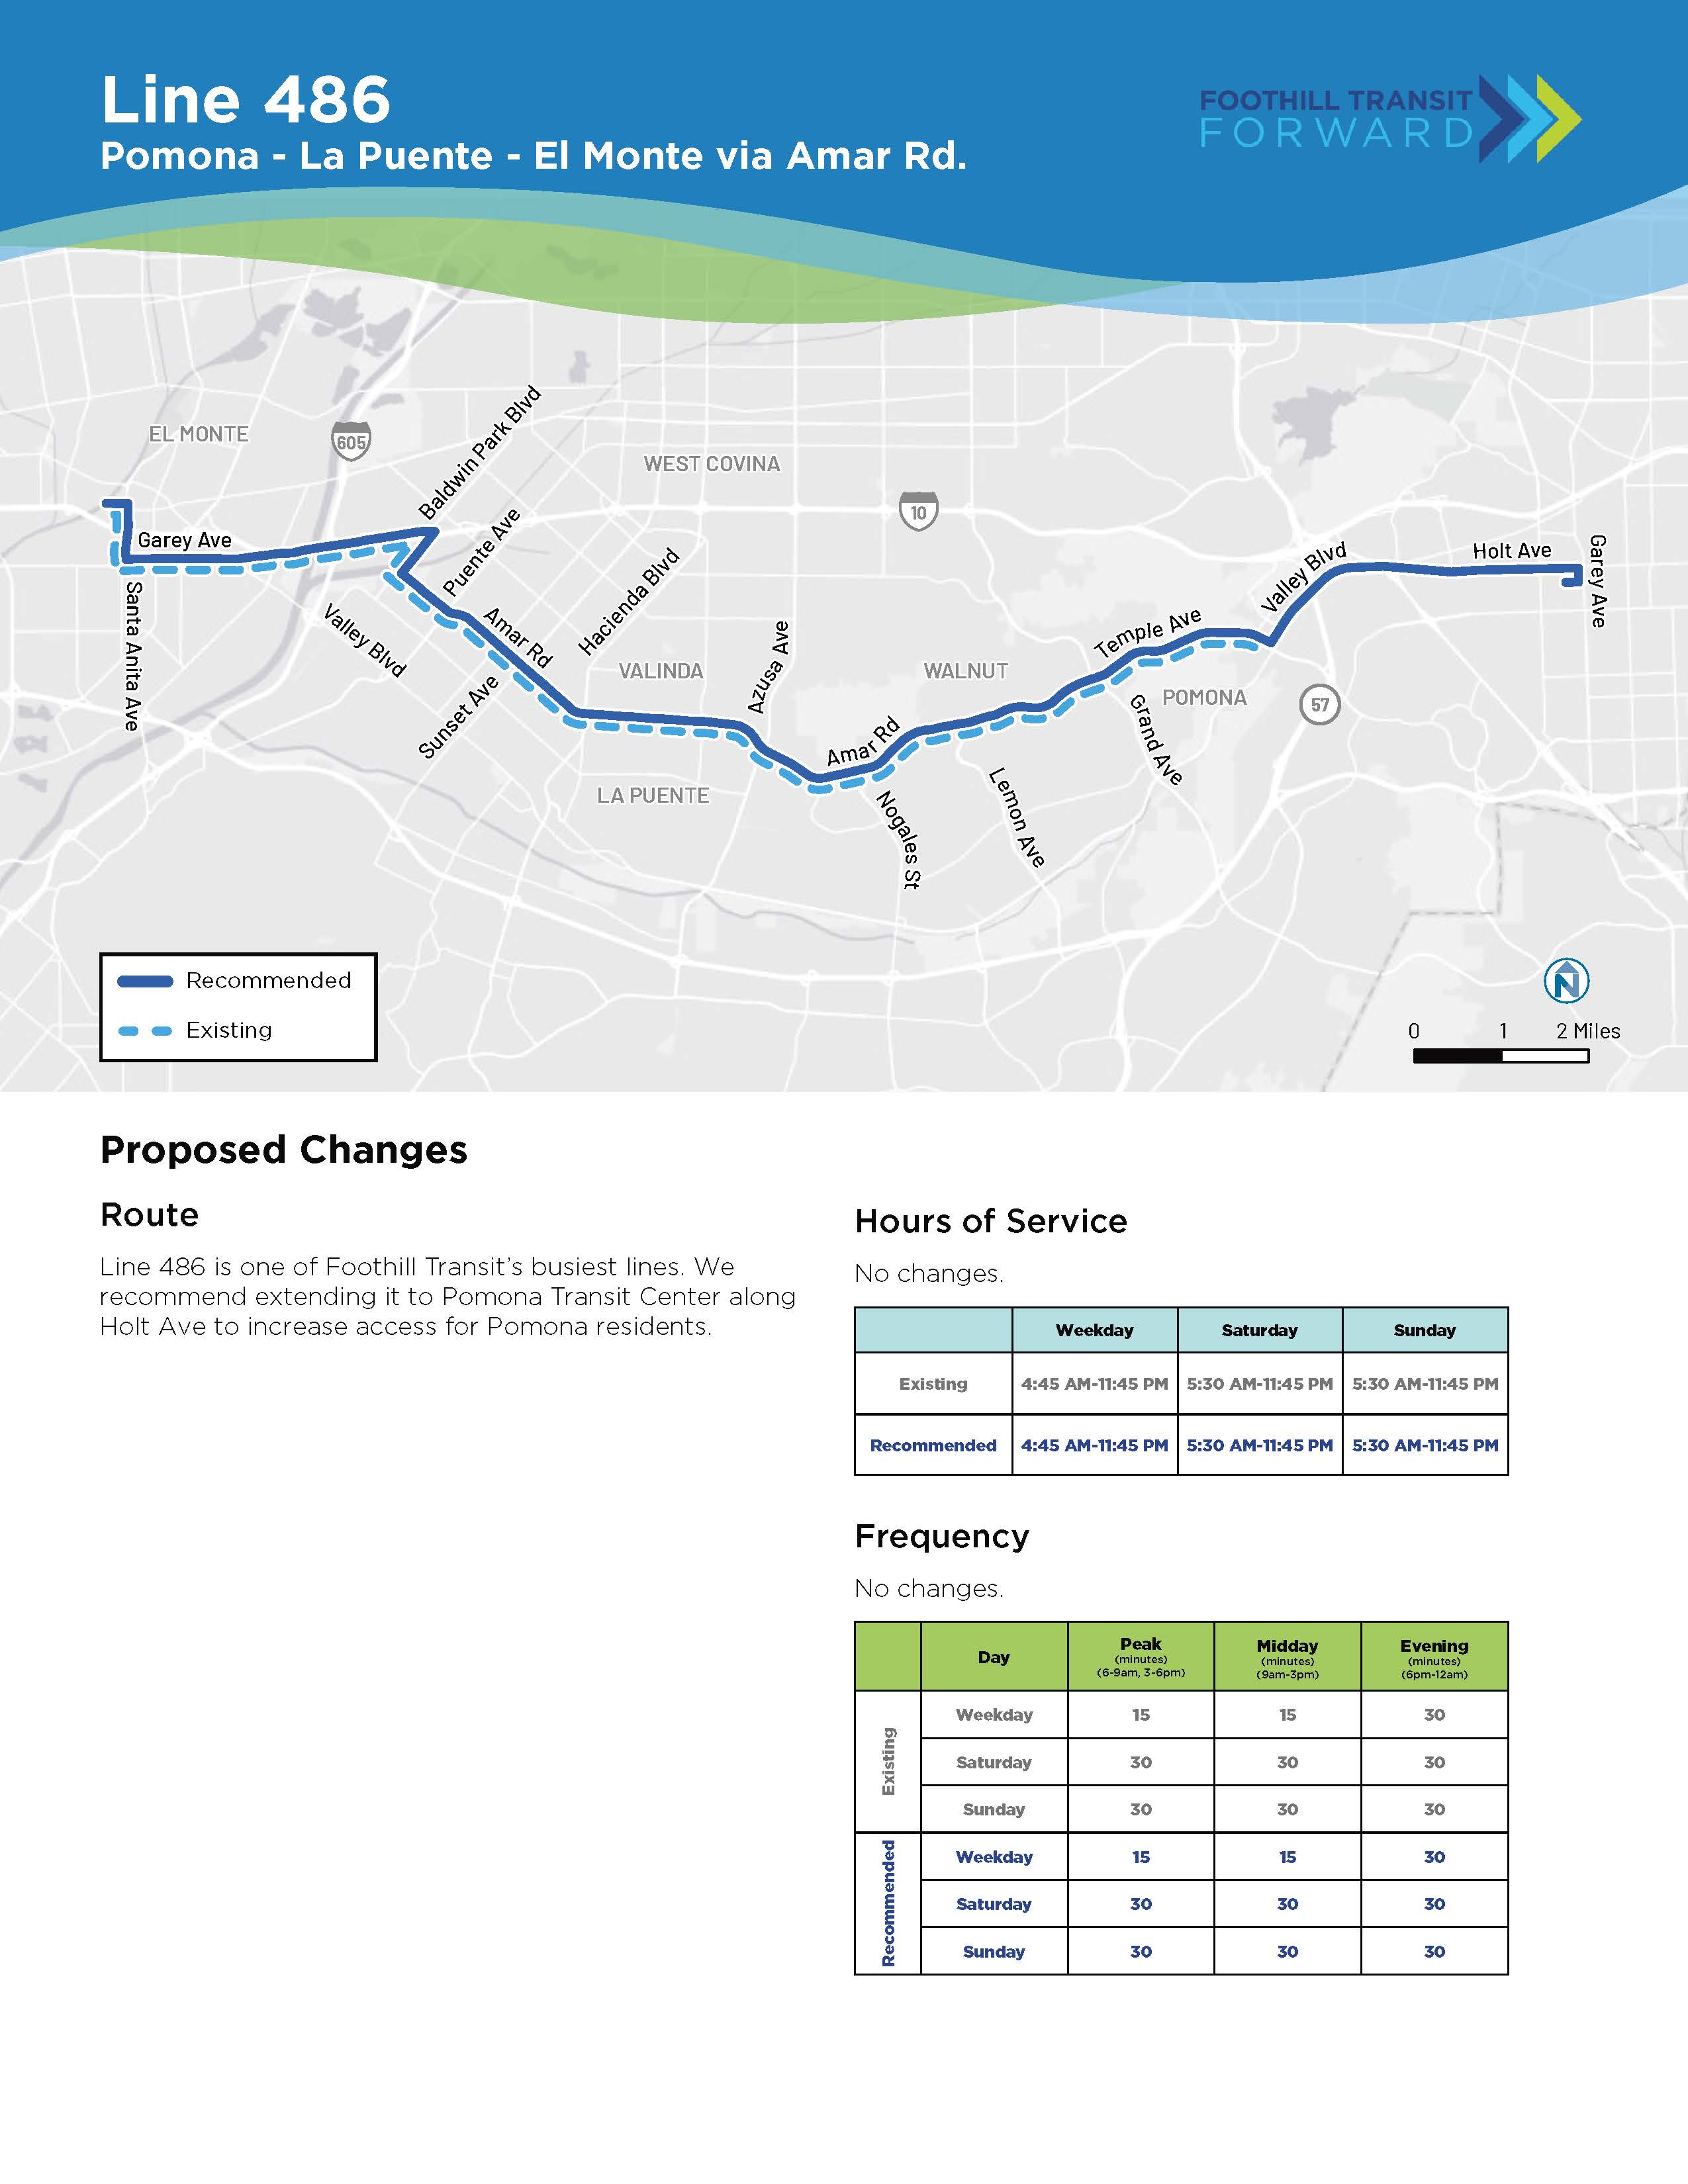 拟议变更： 路线：486 号线是 Foothill Transit 最繁忙的线路之一。 我们建议将其扩展到 Holt Ave 沿线的 Pomona Transit Centre，以增加 Pomona 居民的出入通道。 服务时间：无变化。 频率：无变化。